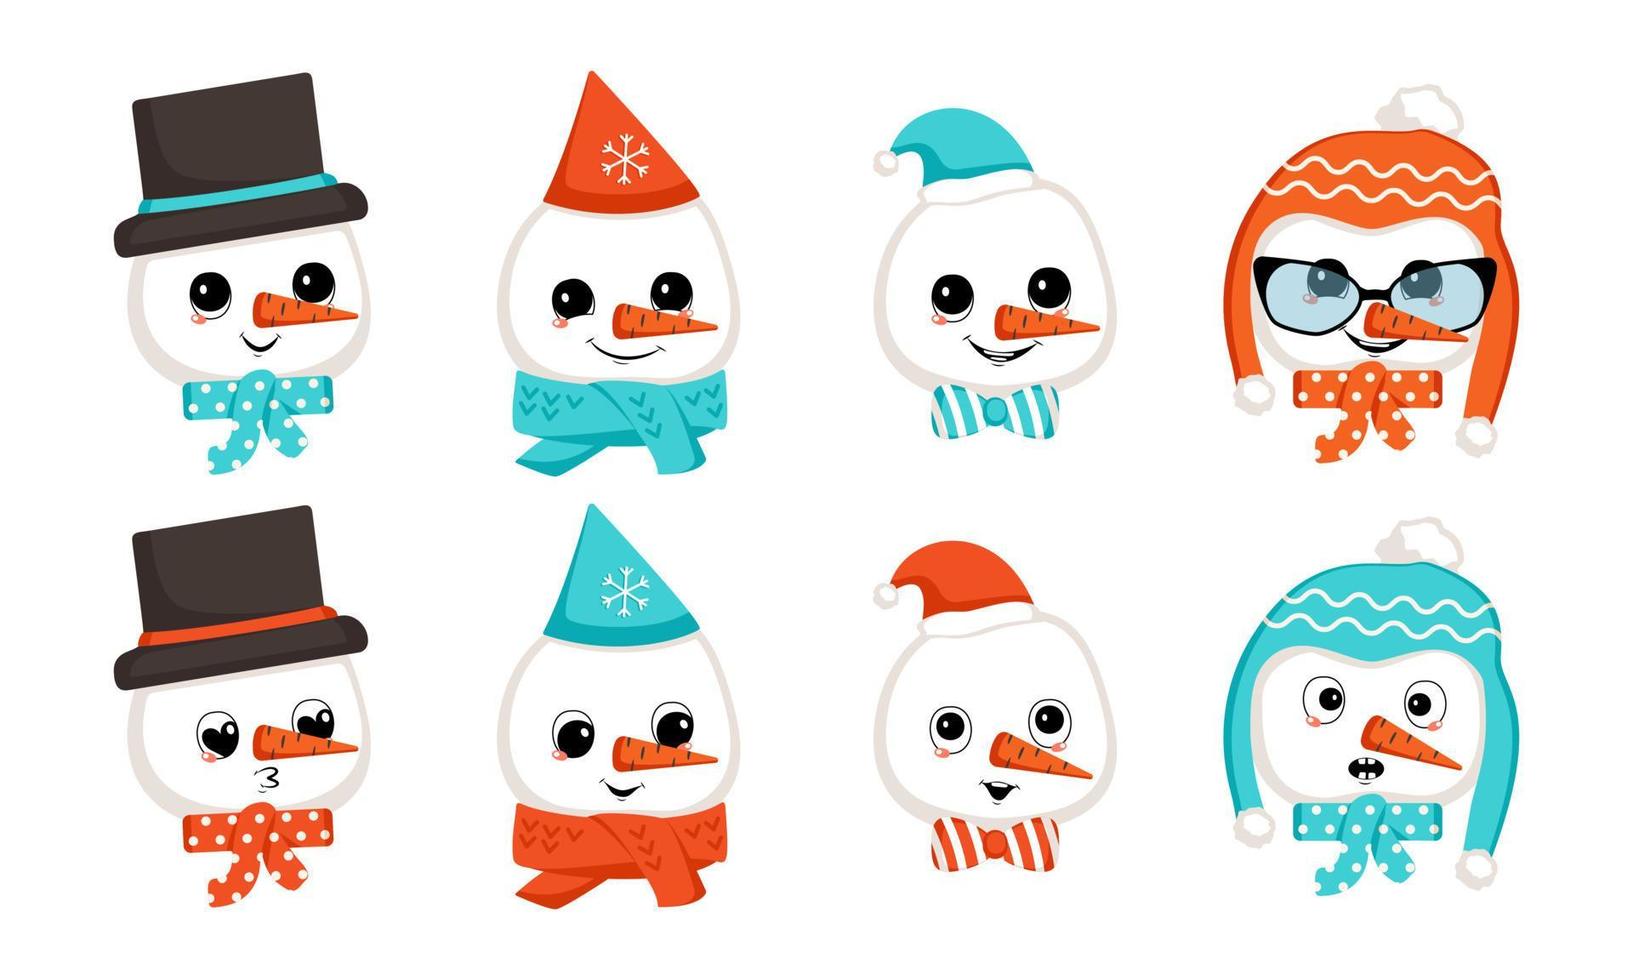 sneeuwpop met gelukkige emoties in pet of hoed. schattig karakter met vrolijk gezicht in feestelijk kostuum voor nieuwjaar en kerstmis. hoofd met een reeks grappige en bange emoties. platte vectorillustratie vector